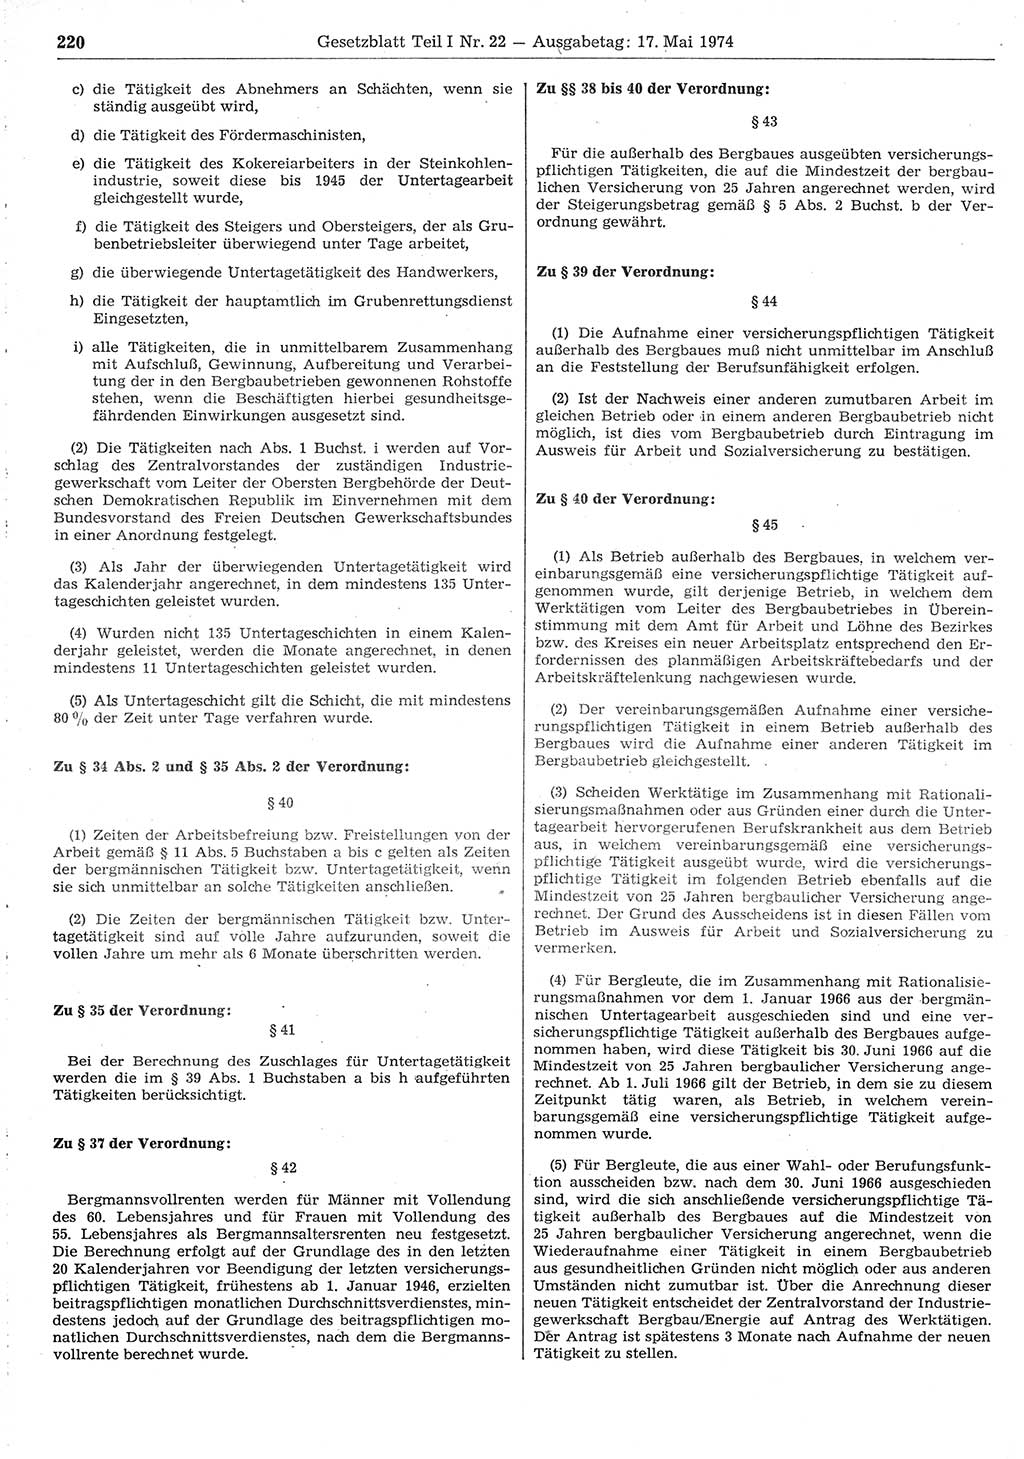 Gesetzblatt (GBl.) der Deutschen Demokratischen Republik (DDR) Teil Ⅰ 1974, Seite 220 (GBl. DDR Ⅰ 1974, S. 220)